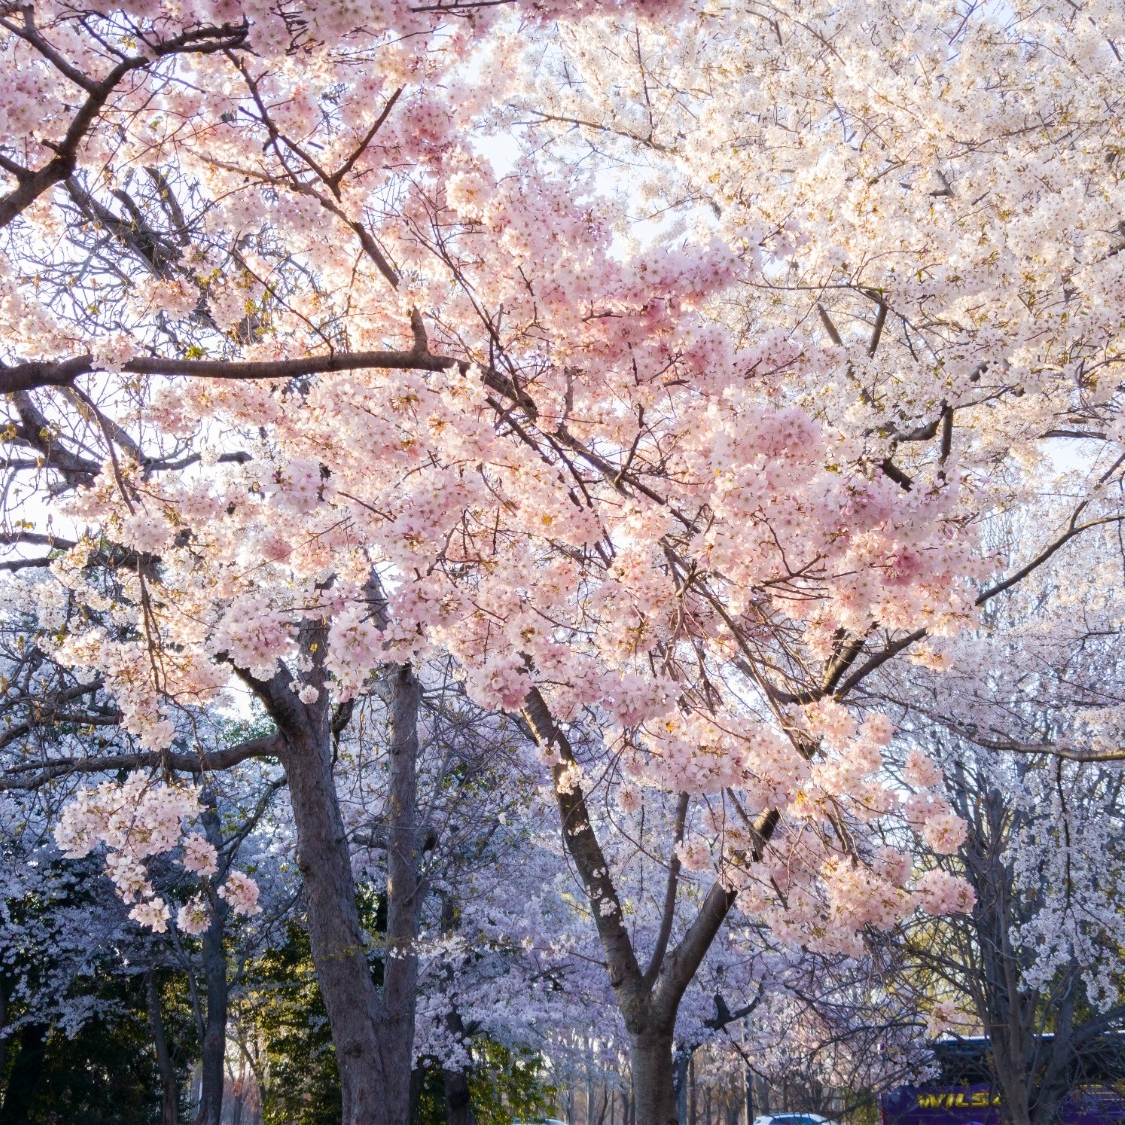 Cherry Blossom trees in full bloom